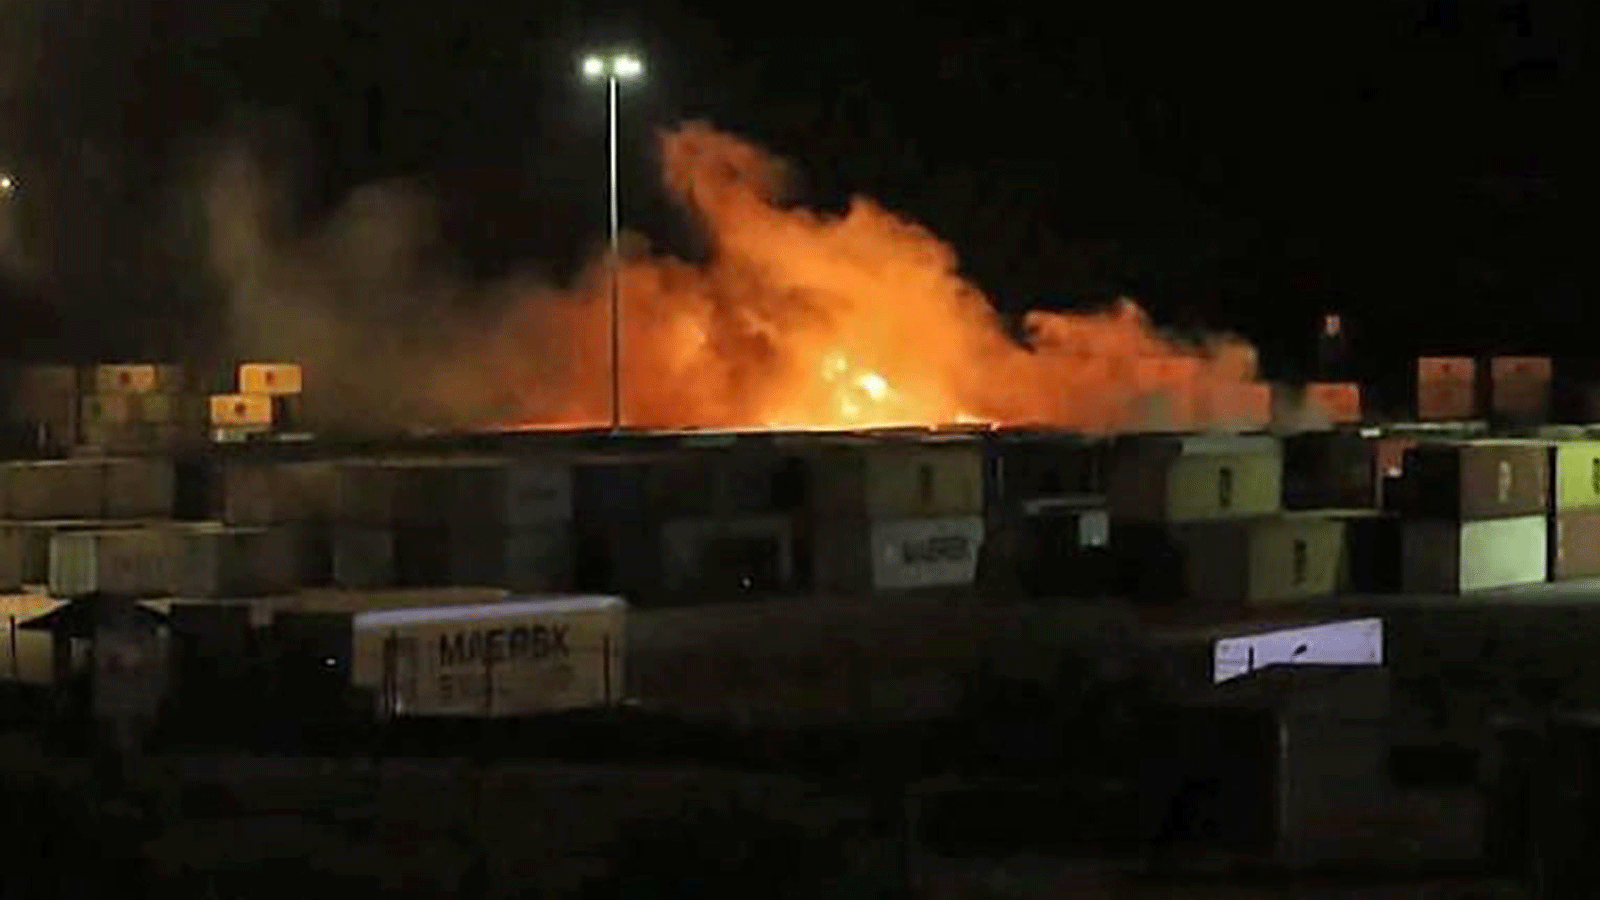 صورة مأخوذة من شريط فيديو نشرته وكالة الأنباء السورية الرسمية (سانا) في 7 كانون الأول/ديسمبر 2021 تُظهر حريقًا بالقرب من حاويات في ميناء اللاذقية السوري.